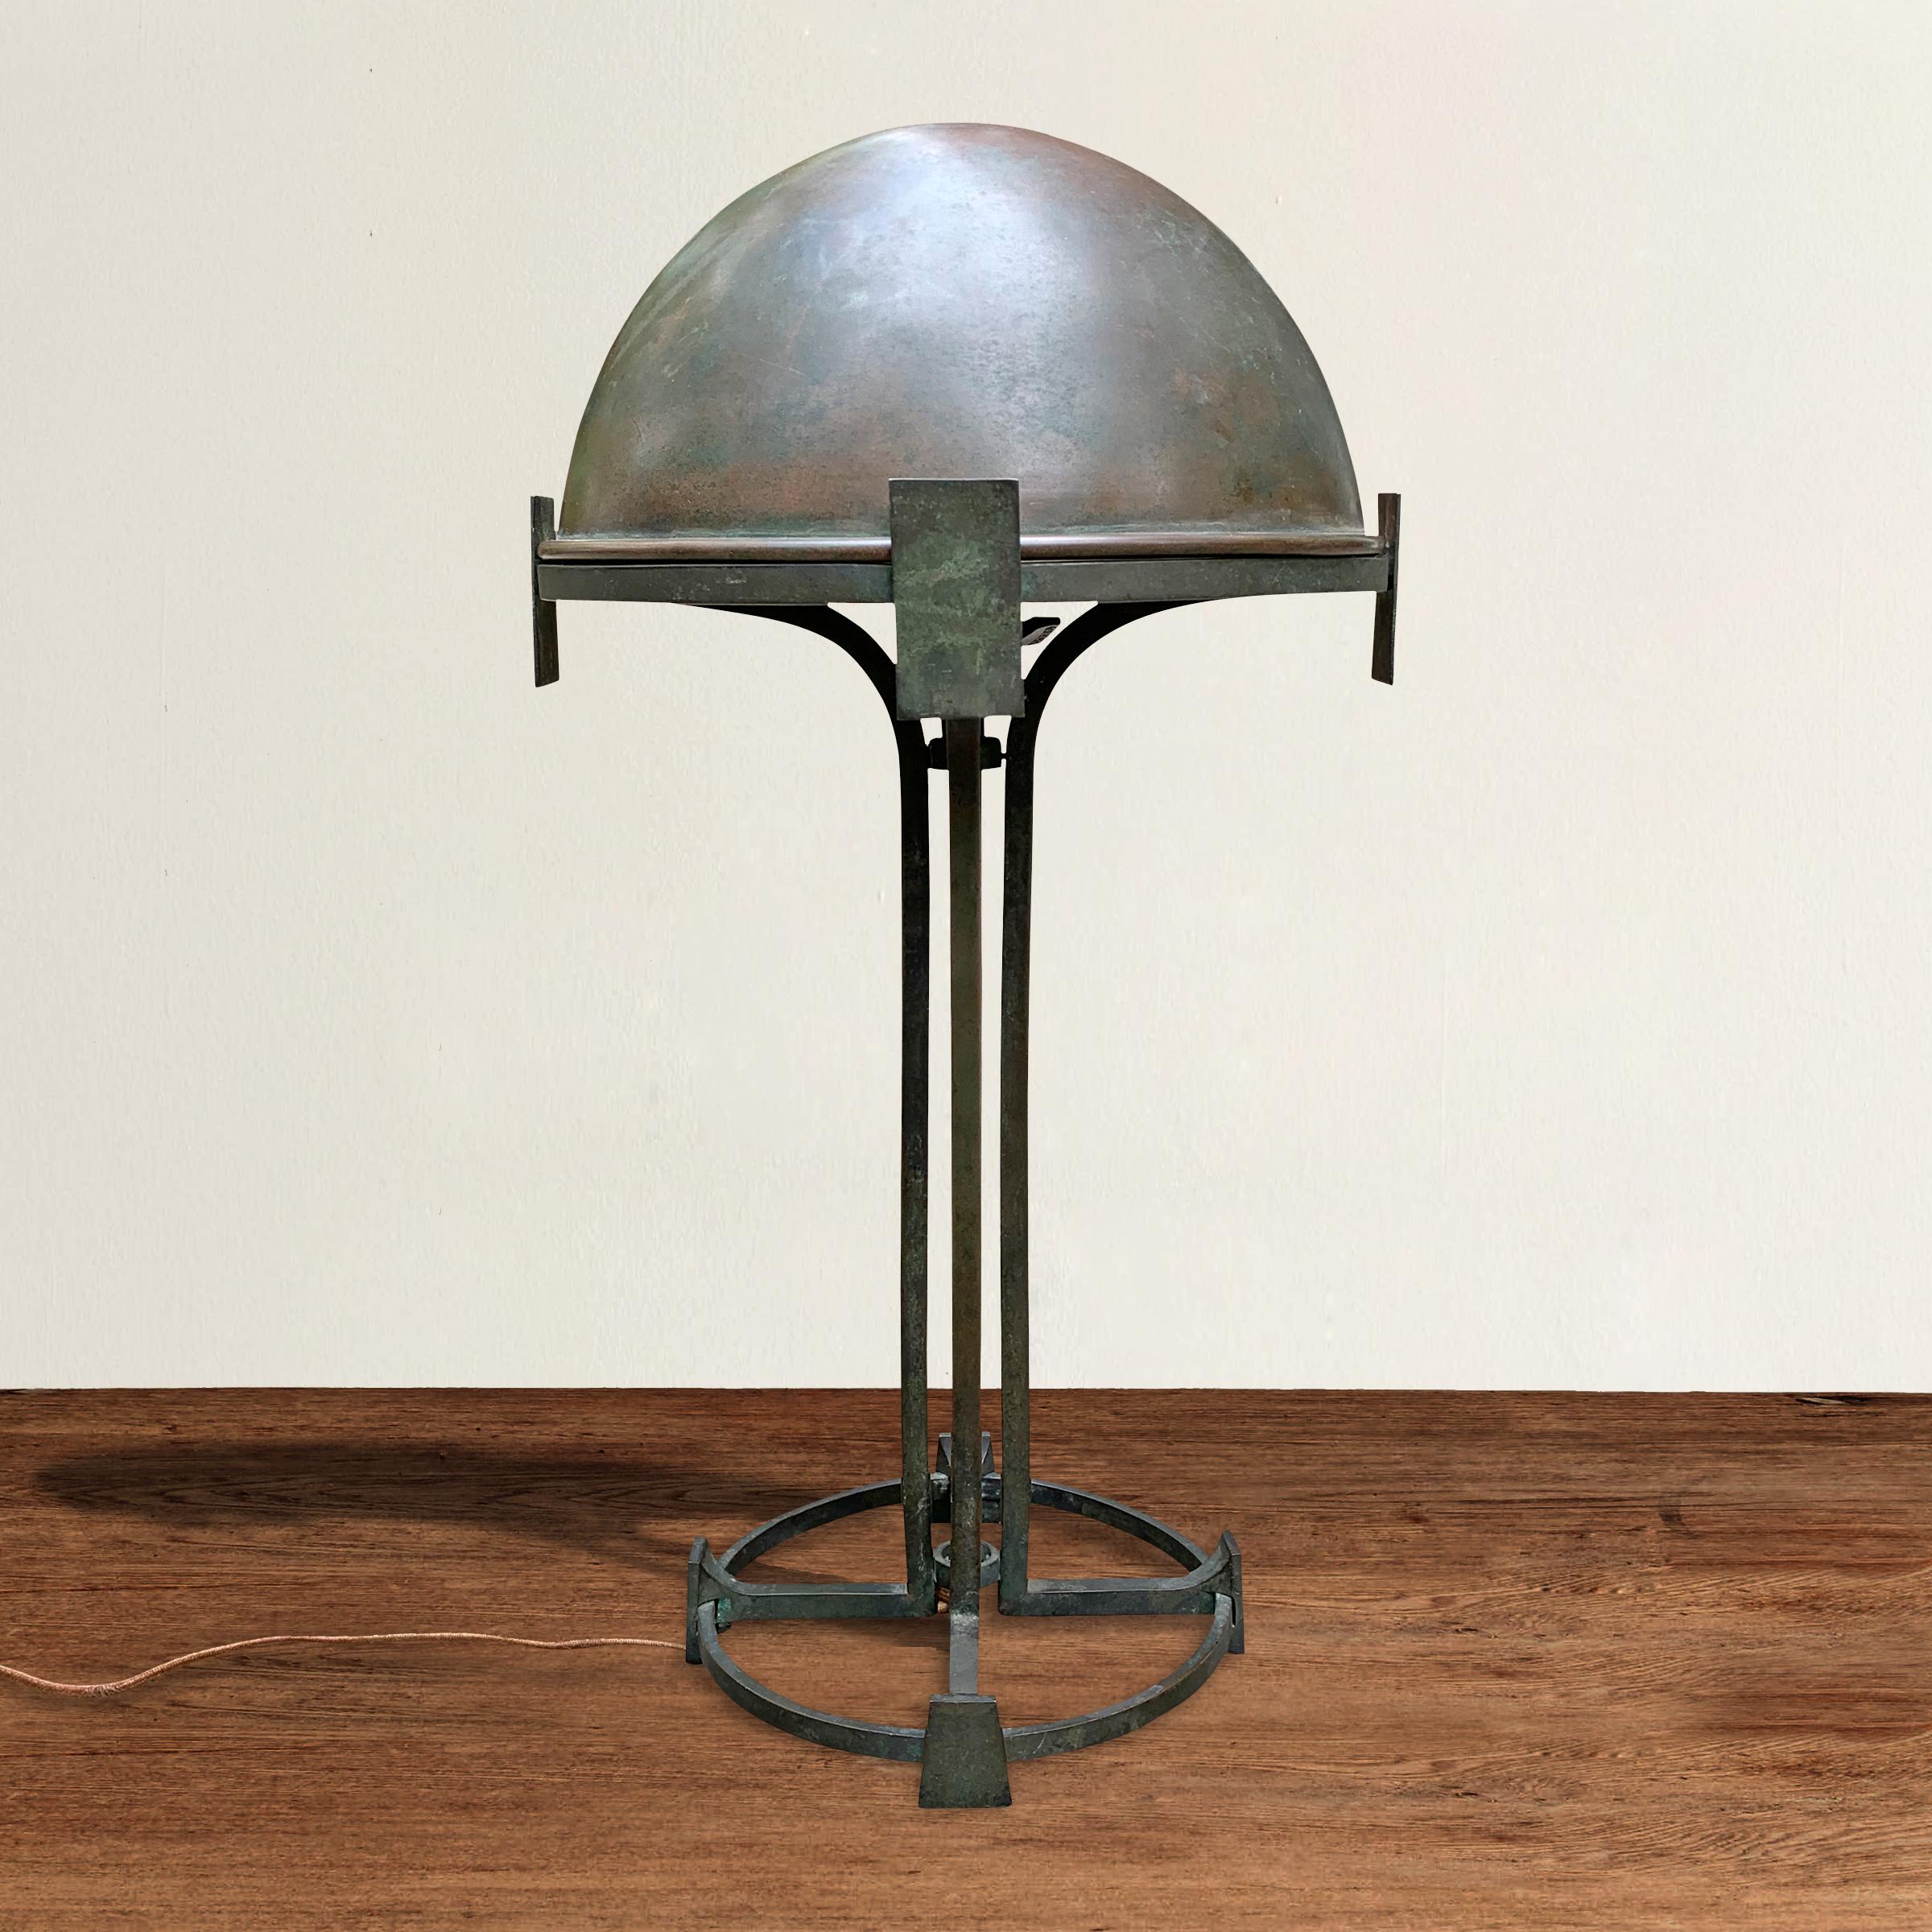 Une incroyable lampe de table de qualité en bronze de la Sécession viennoise du début du 20e siècle avec un abat-jour amovible en forme de dôme soutenu par quatre montants carrés se transformant en pieds en forme de bêche et une base circulaire. Le